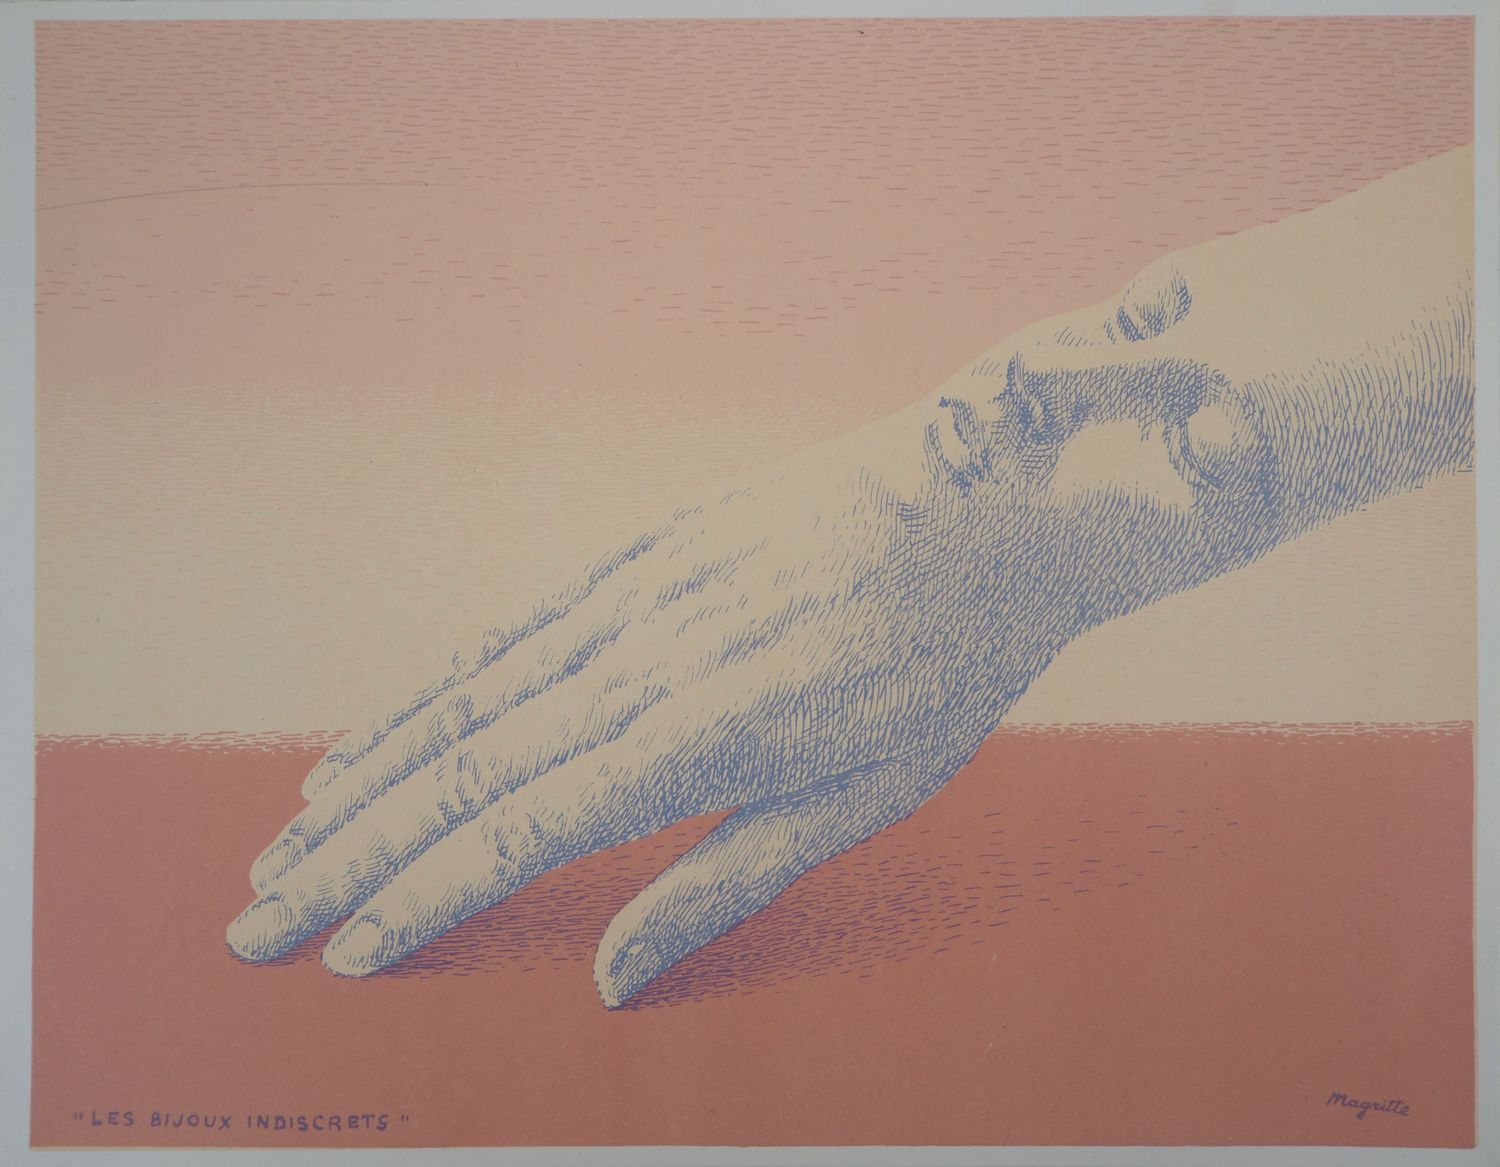 Null René Magritte (1898-1967)

Les bijoux indiscrets, 1963

Lithographie origin&hellip;